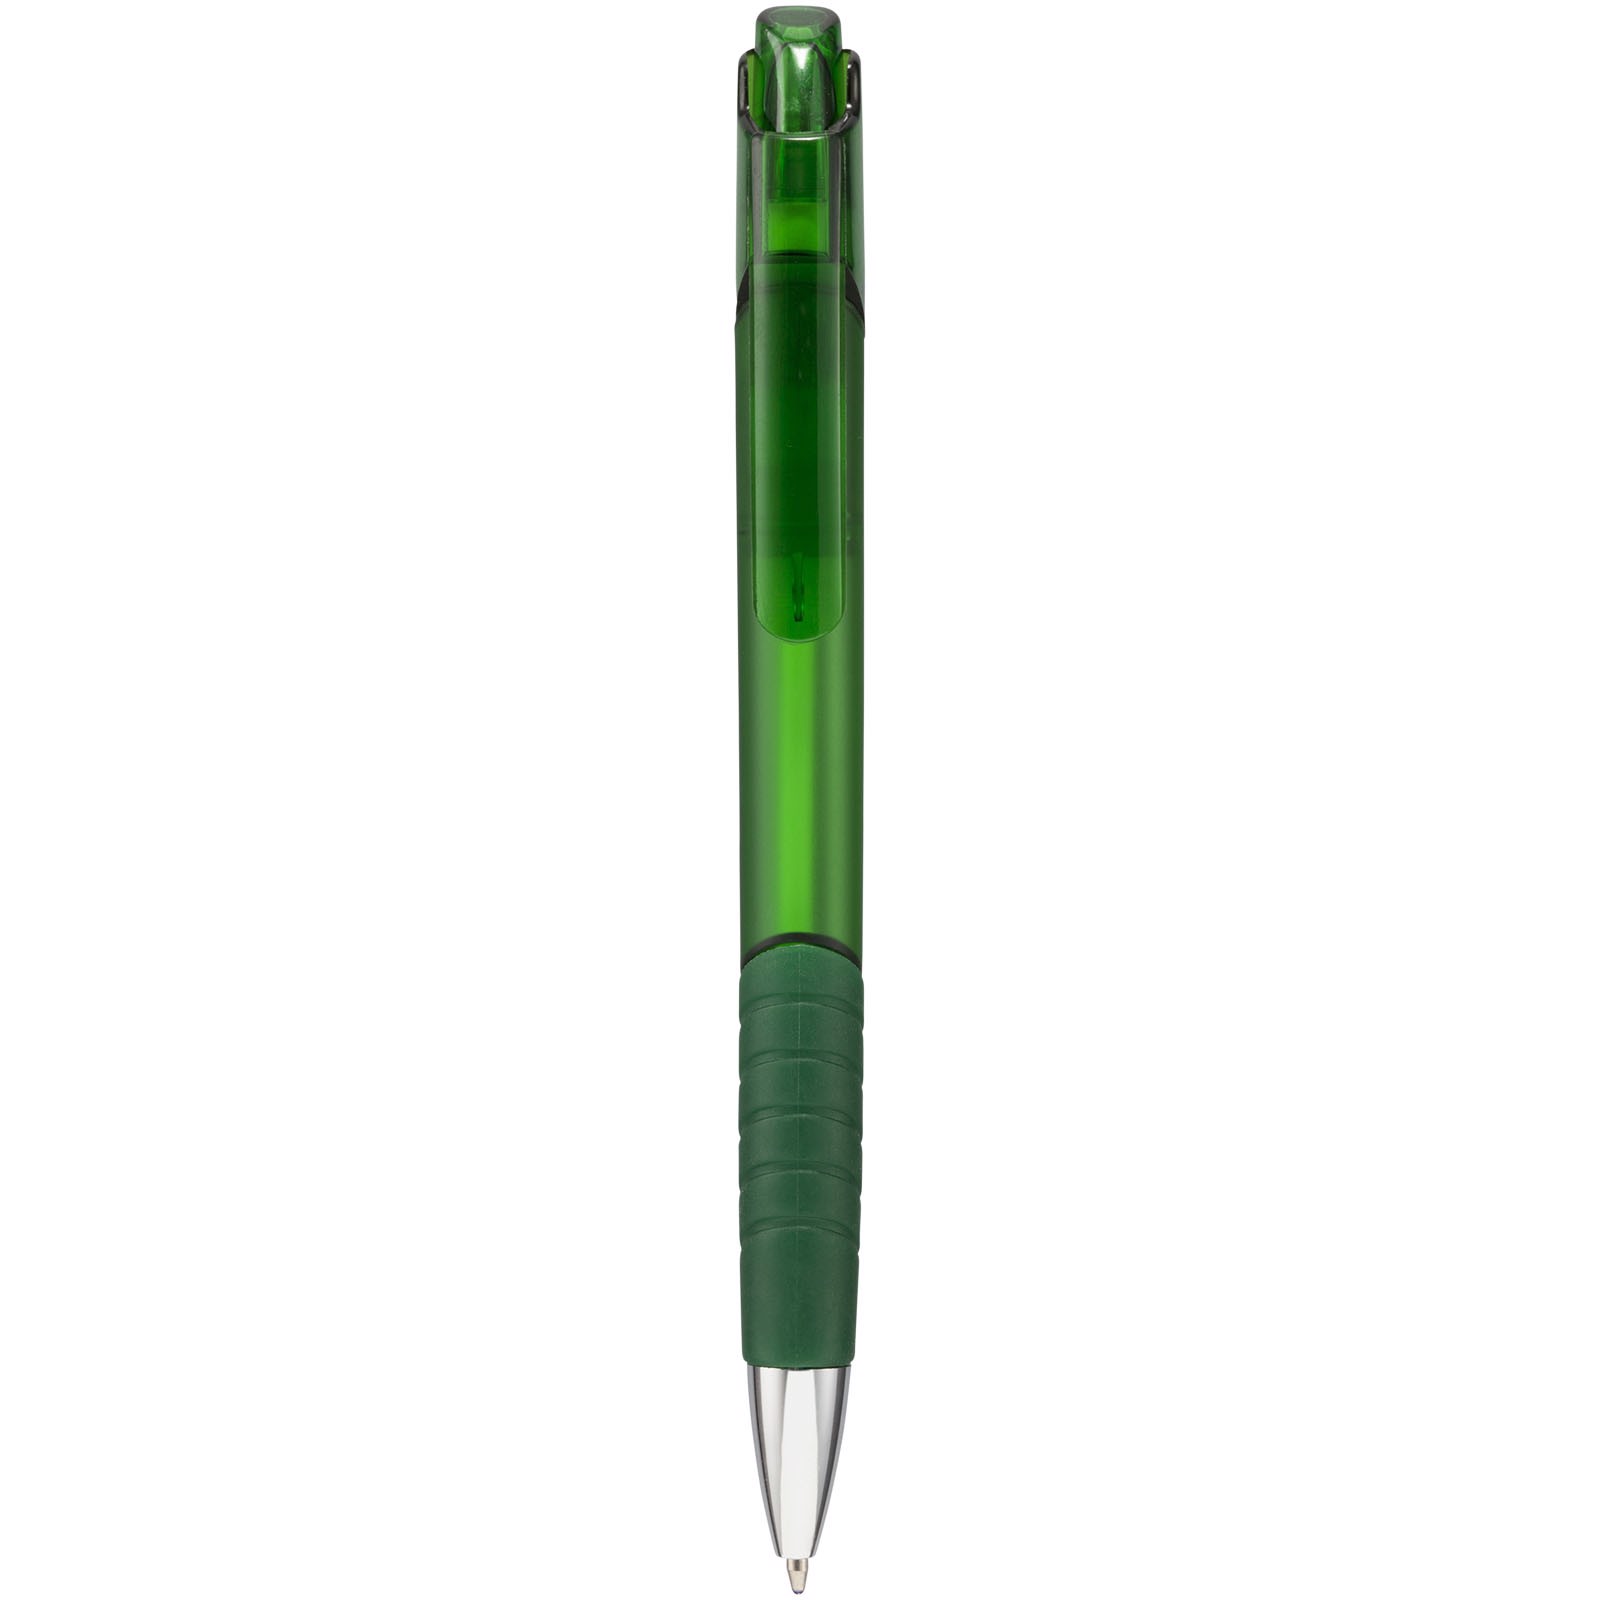 Parral ballpoint pen - Green